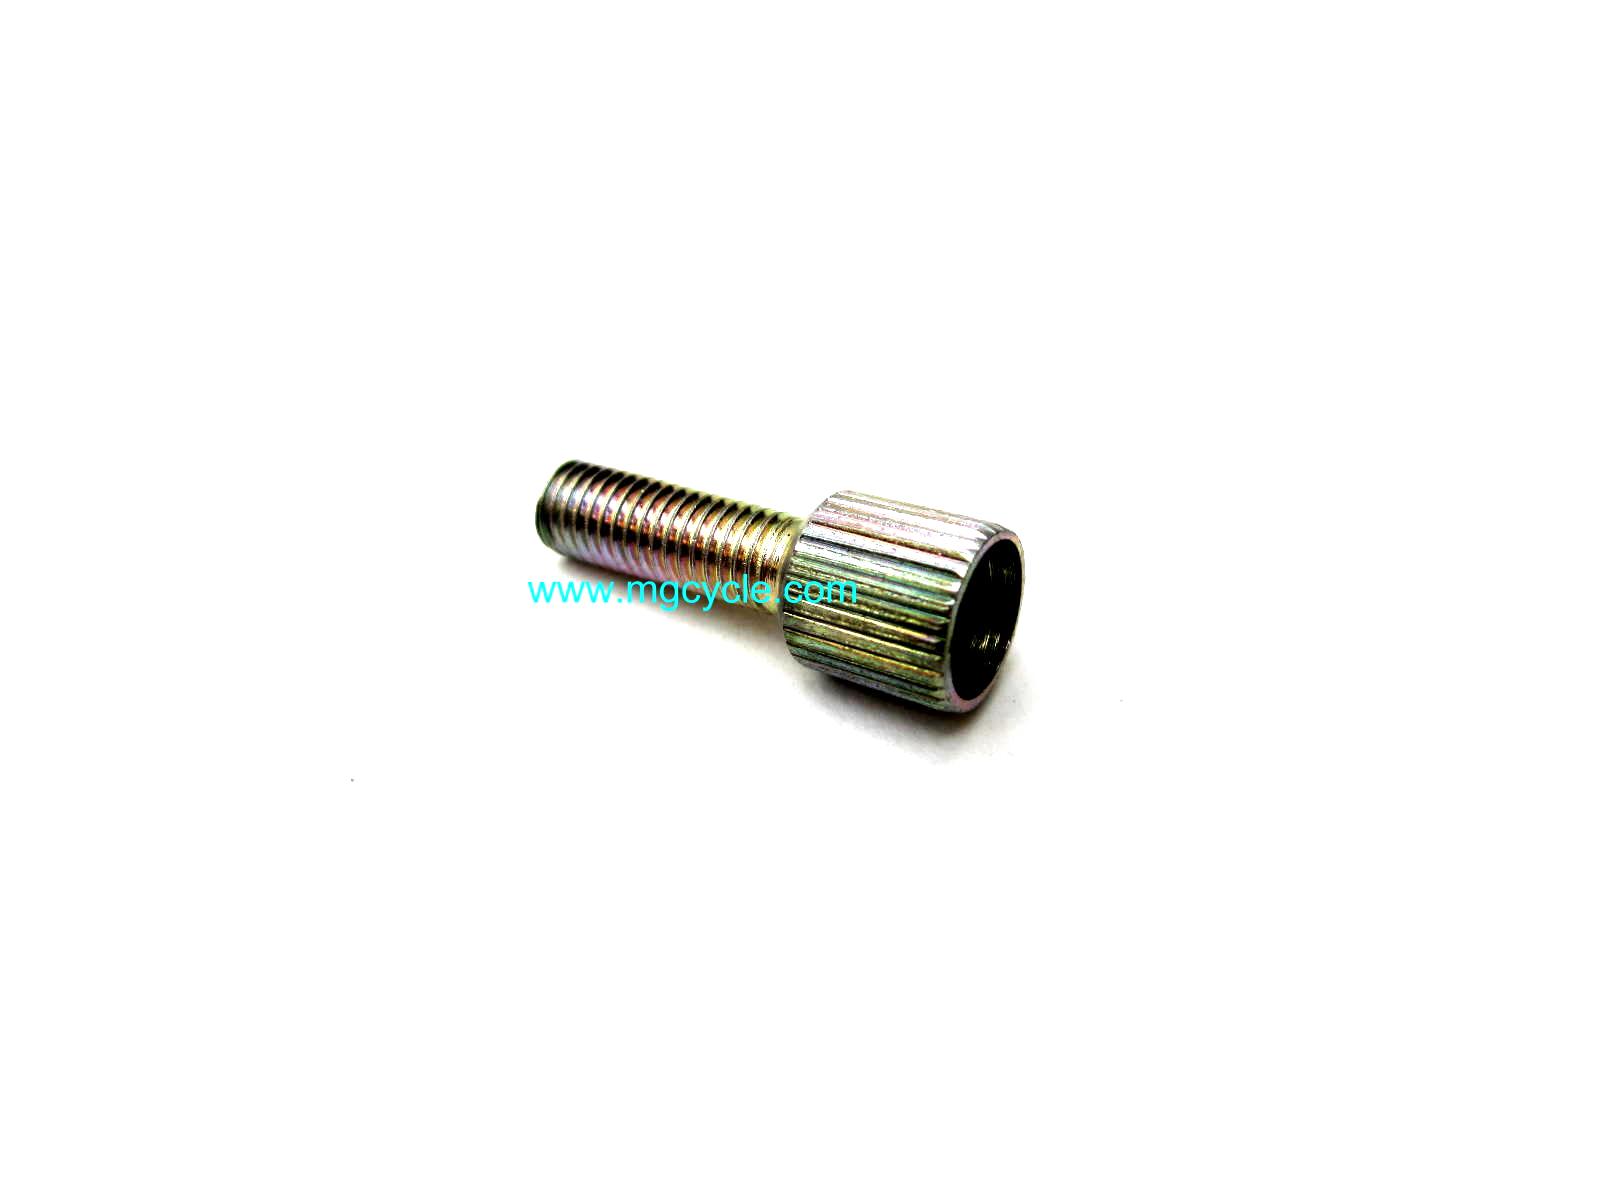 Dellorto 1481 cable elbow adjuster screw, PHF-PHM ~5mm OD